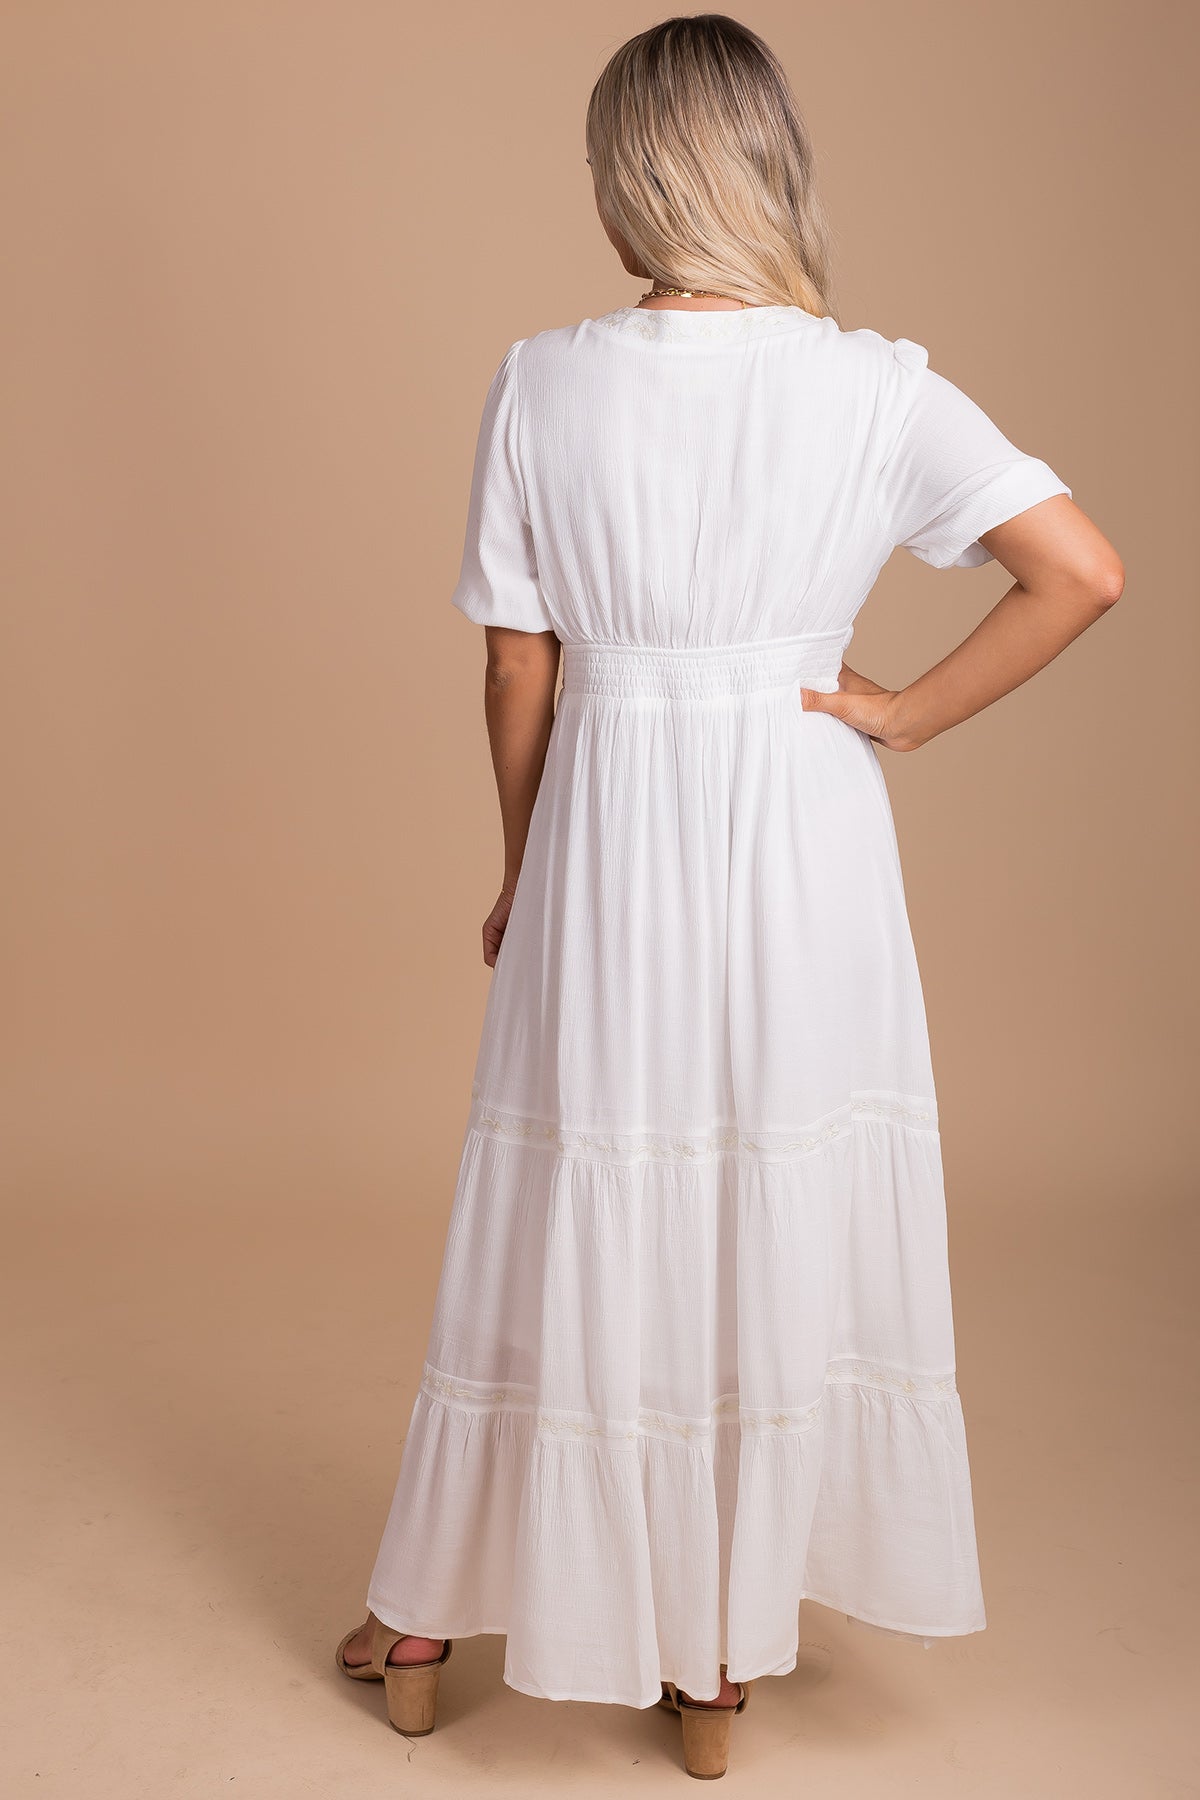 Summer Dresses in White for Women